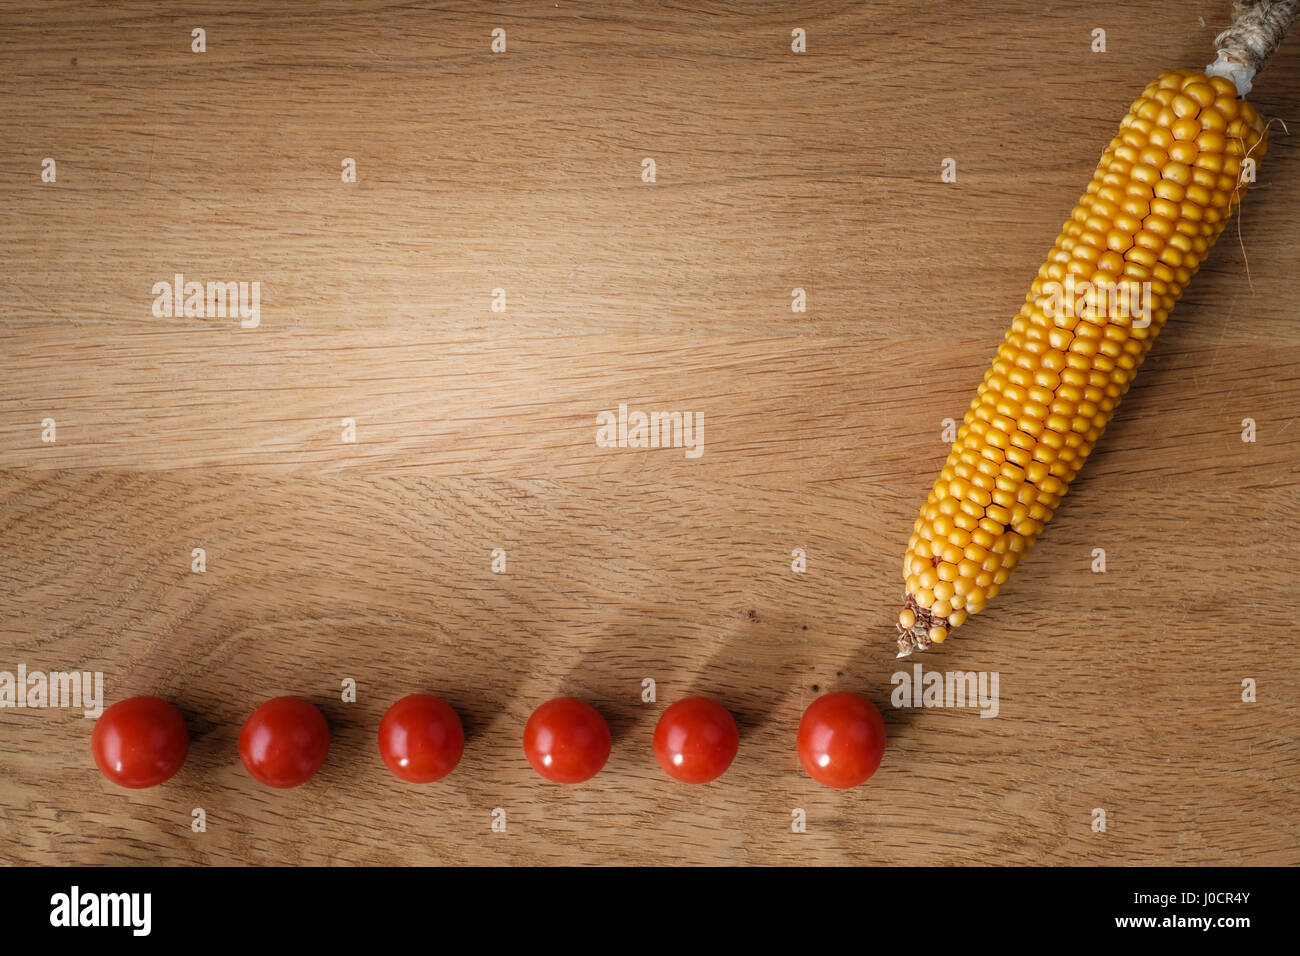 Holztisch mit Tomaten und Maiskolben mit Textfreiraum Stockfoto